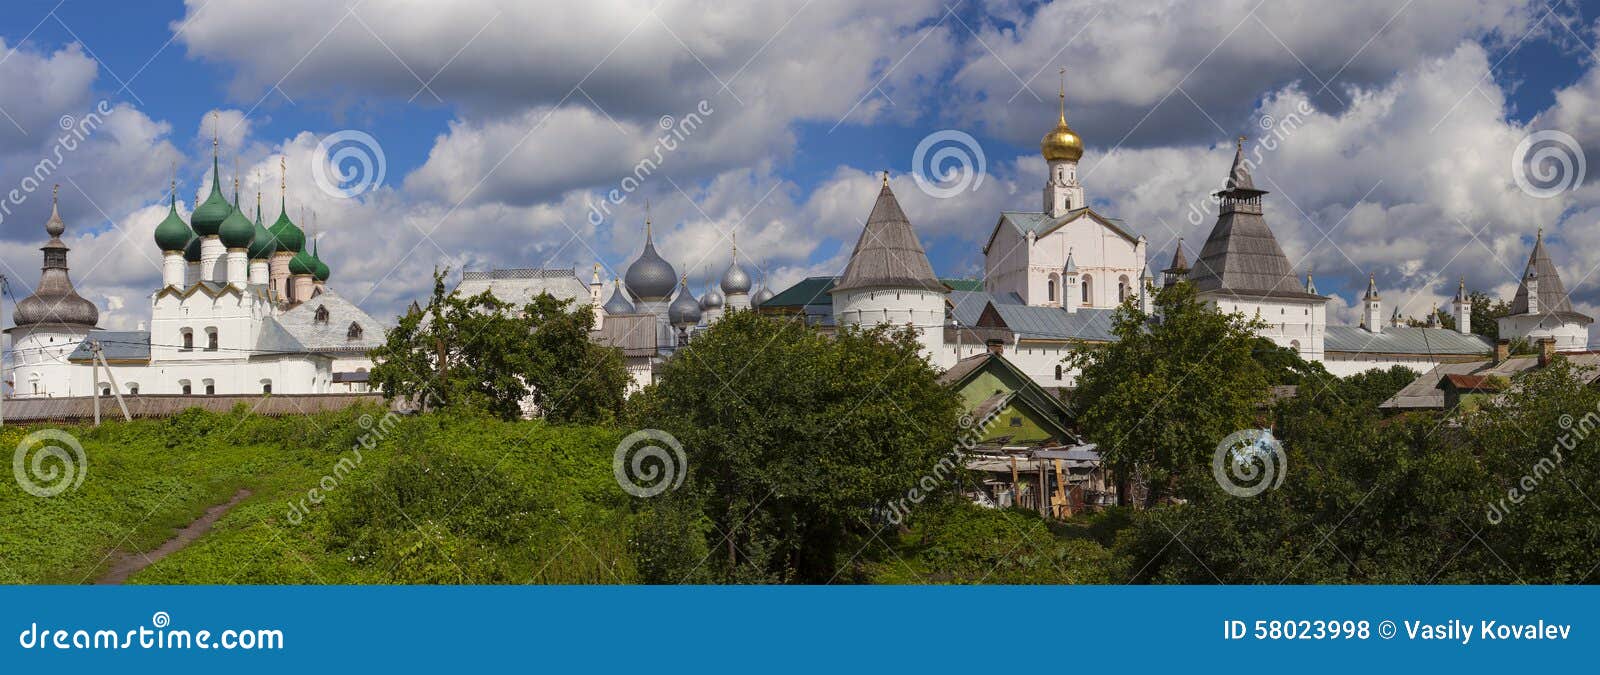 rostov kremlin panorama, russia